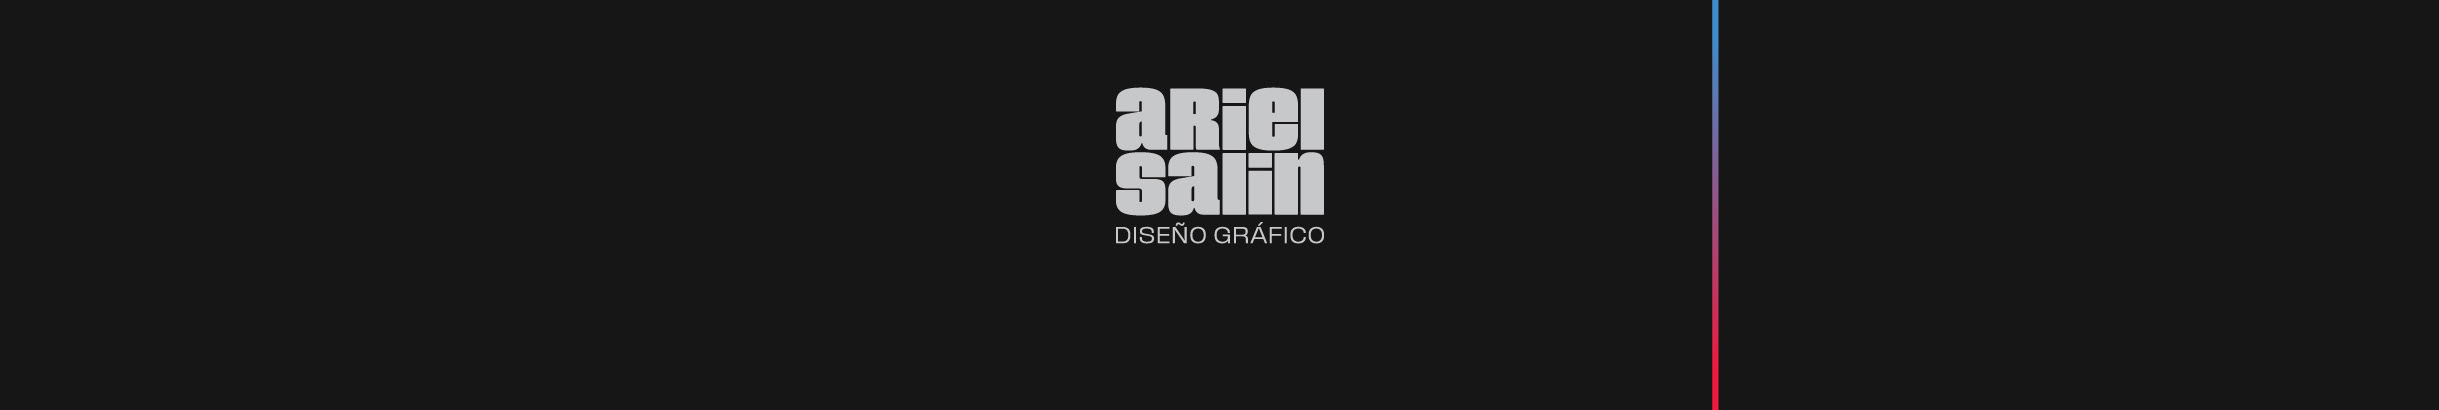 Ariel Salin's profile banner